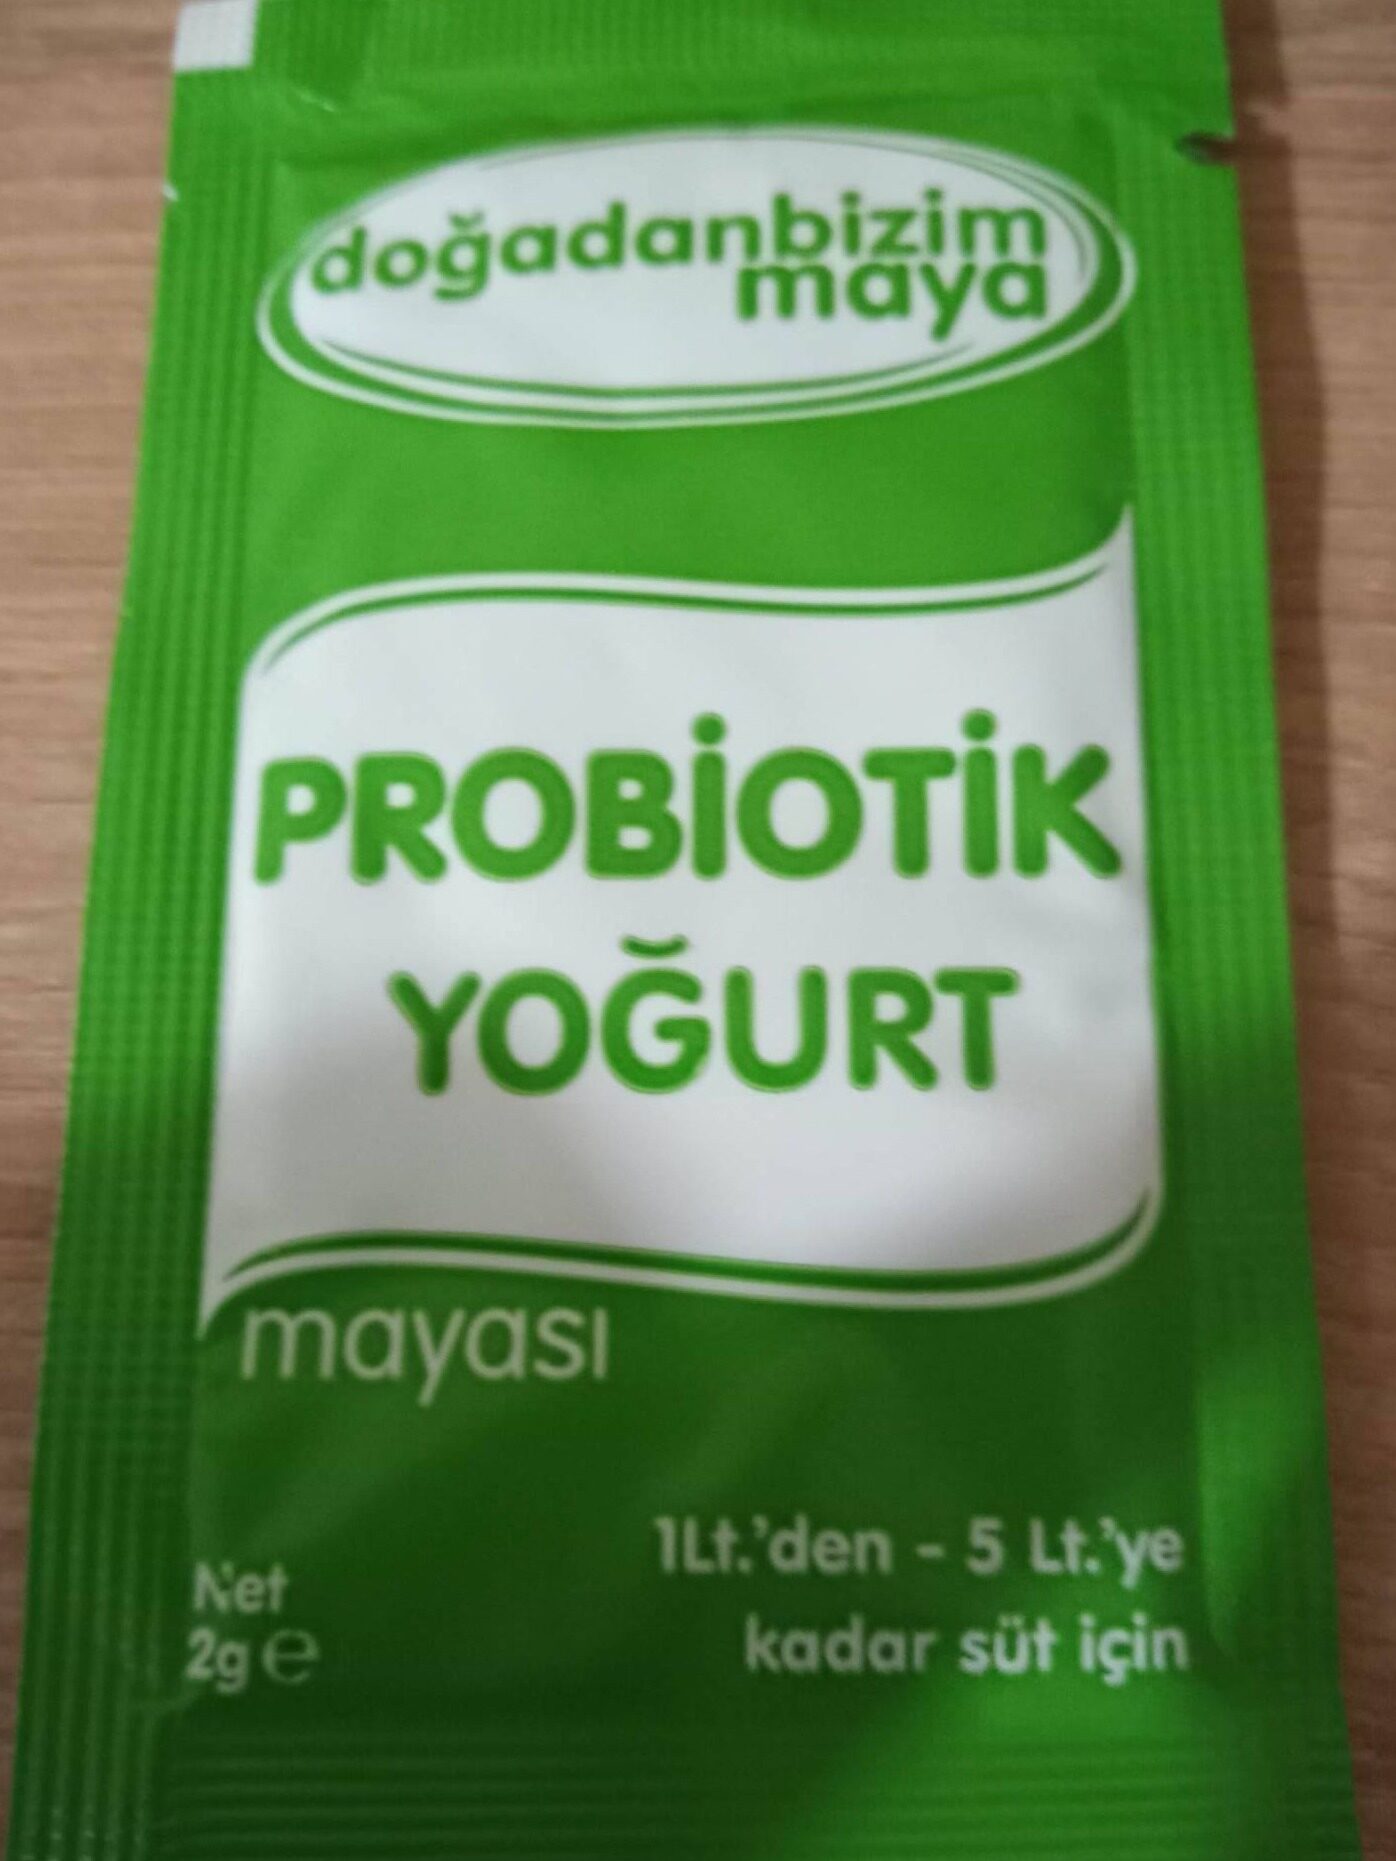 คีเฟอร์ kefir โยเกิร์ตฟรีซดราย (starter yogurt freeze dry) 1 ซอง ขนาด 2 GR (1 ซอง ต่อนม 1- 5 ลิตร)สามารถนำมาใช้ทำโยเกิร์ตหรือนำมาเติมเกรนได้ พร้อมจัดส่ง